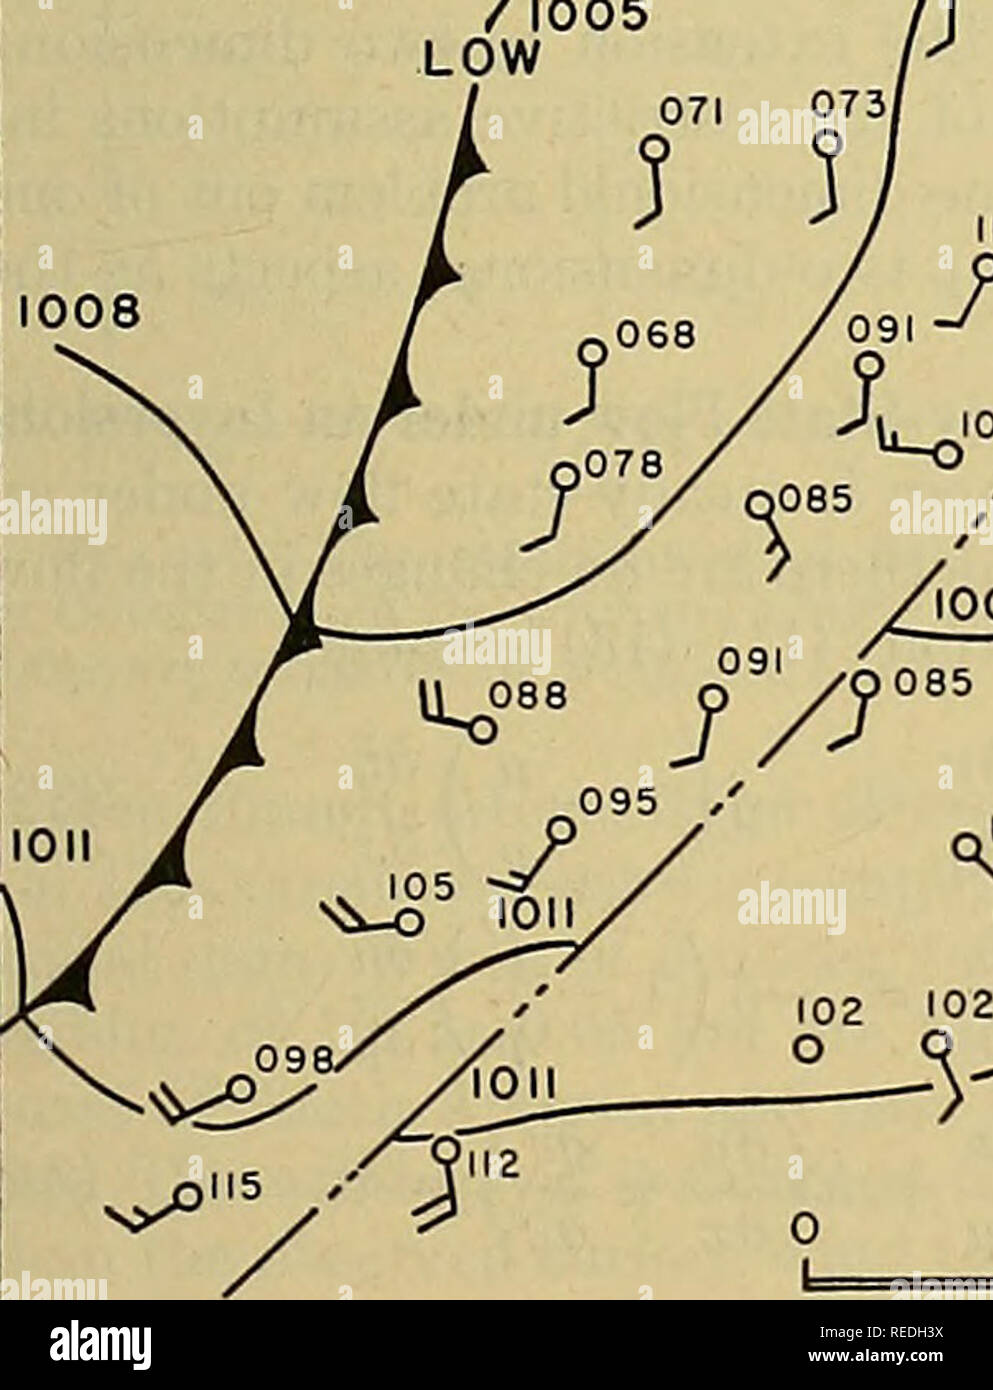 . Compendio de meteorología. La meteorología. Baja 1008 J , i / "0" 6 ^^105/089 q 115 1^^), o Q085 / 0O68 / ' ' J I 0989 /ol22 108/ / ||&LT; &LT;°' W V' o. 100 200 millas Fig. 11.-Propuesta de método de dibujo isobars en vi- cinity presión de un salto. El mapa es de 2230 EST el 16 de mayo de 1948, y la línea de turbonada es a través de Northwestern Pennsyl- vania y el sureste de Ohio. son cuatro millas de ancho y se puede observar que éste cubre la mayor parte de la zona de presión ascendente. Con este gráfico en mente, se ha propuesto [9] que la misma aproximación utilizada en el análisis matemático, y que Foto de stock